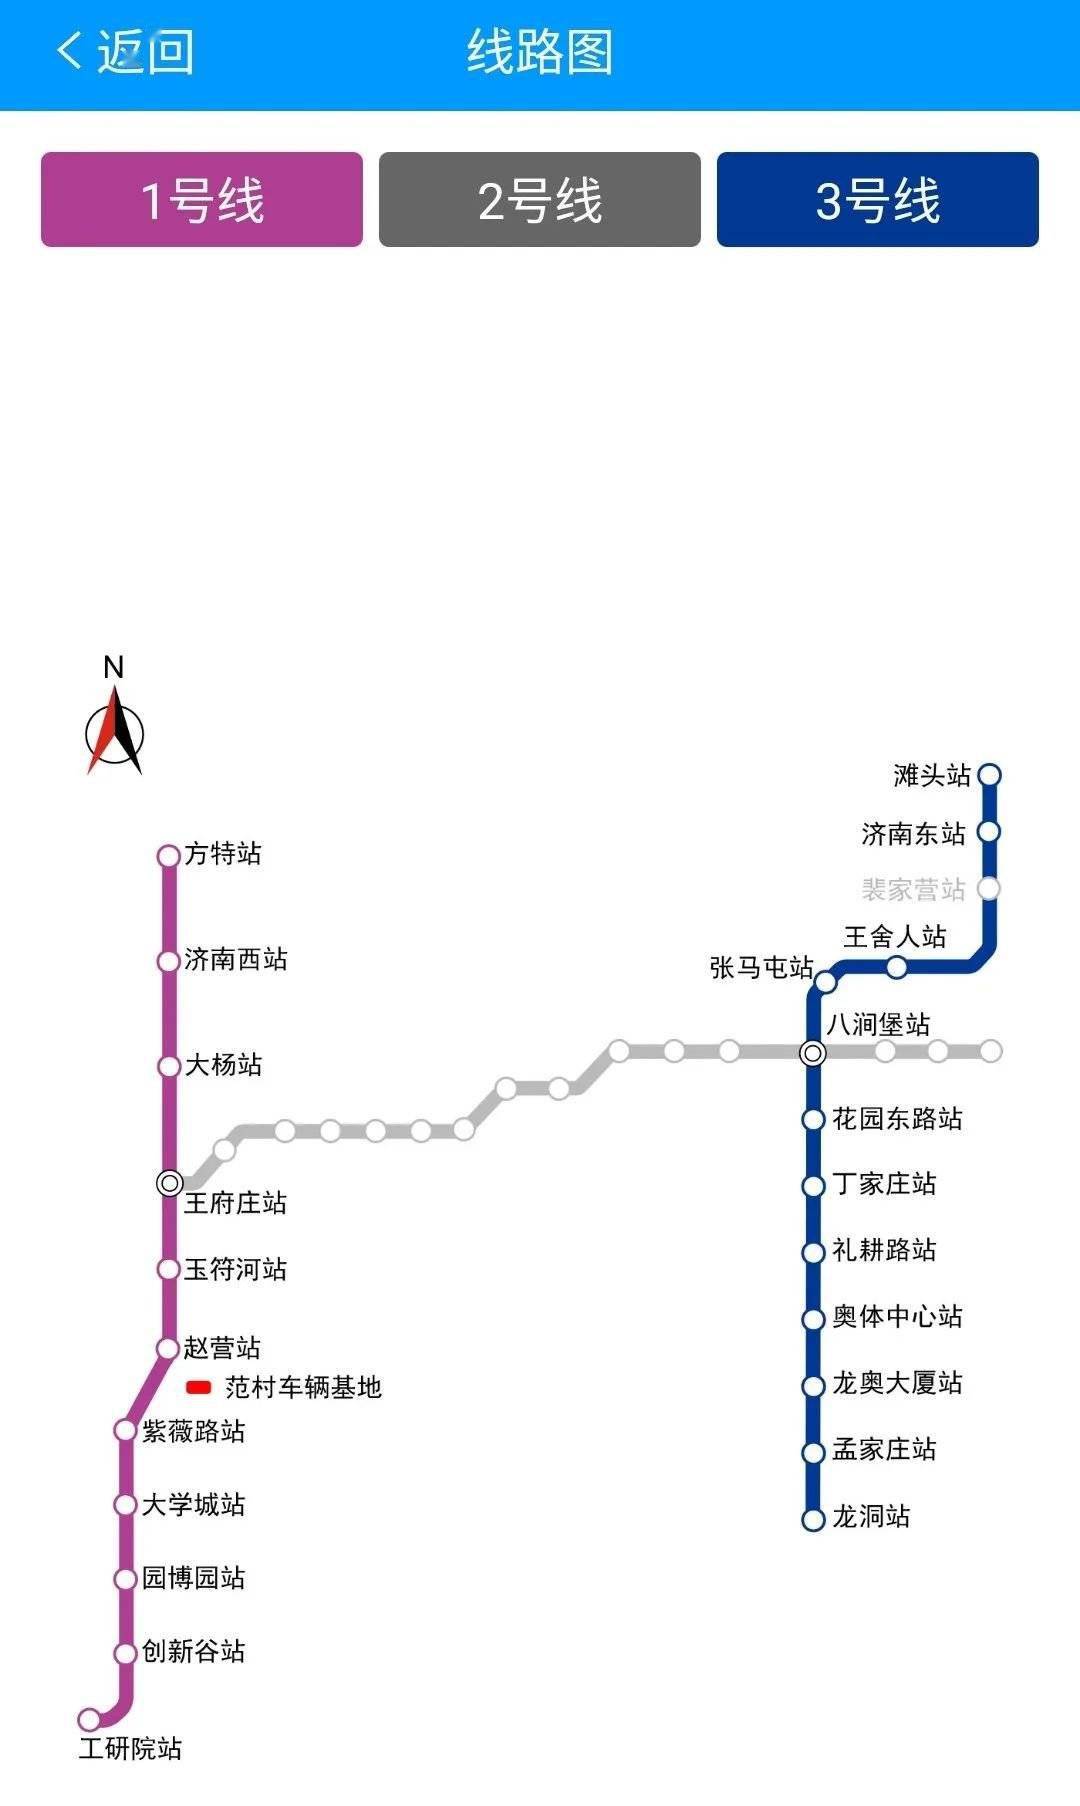 最新丨济南地铁2号线票价公布起步价2元间隔68分钟一趟车